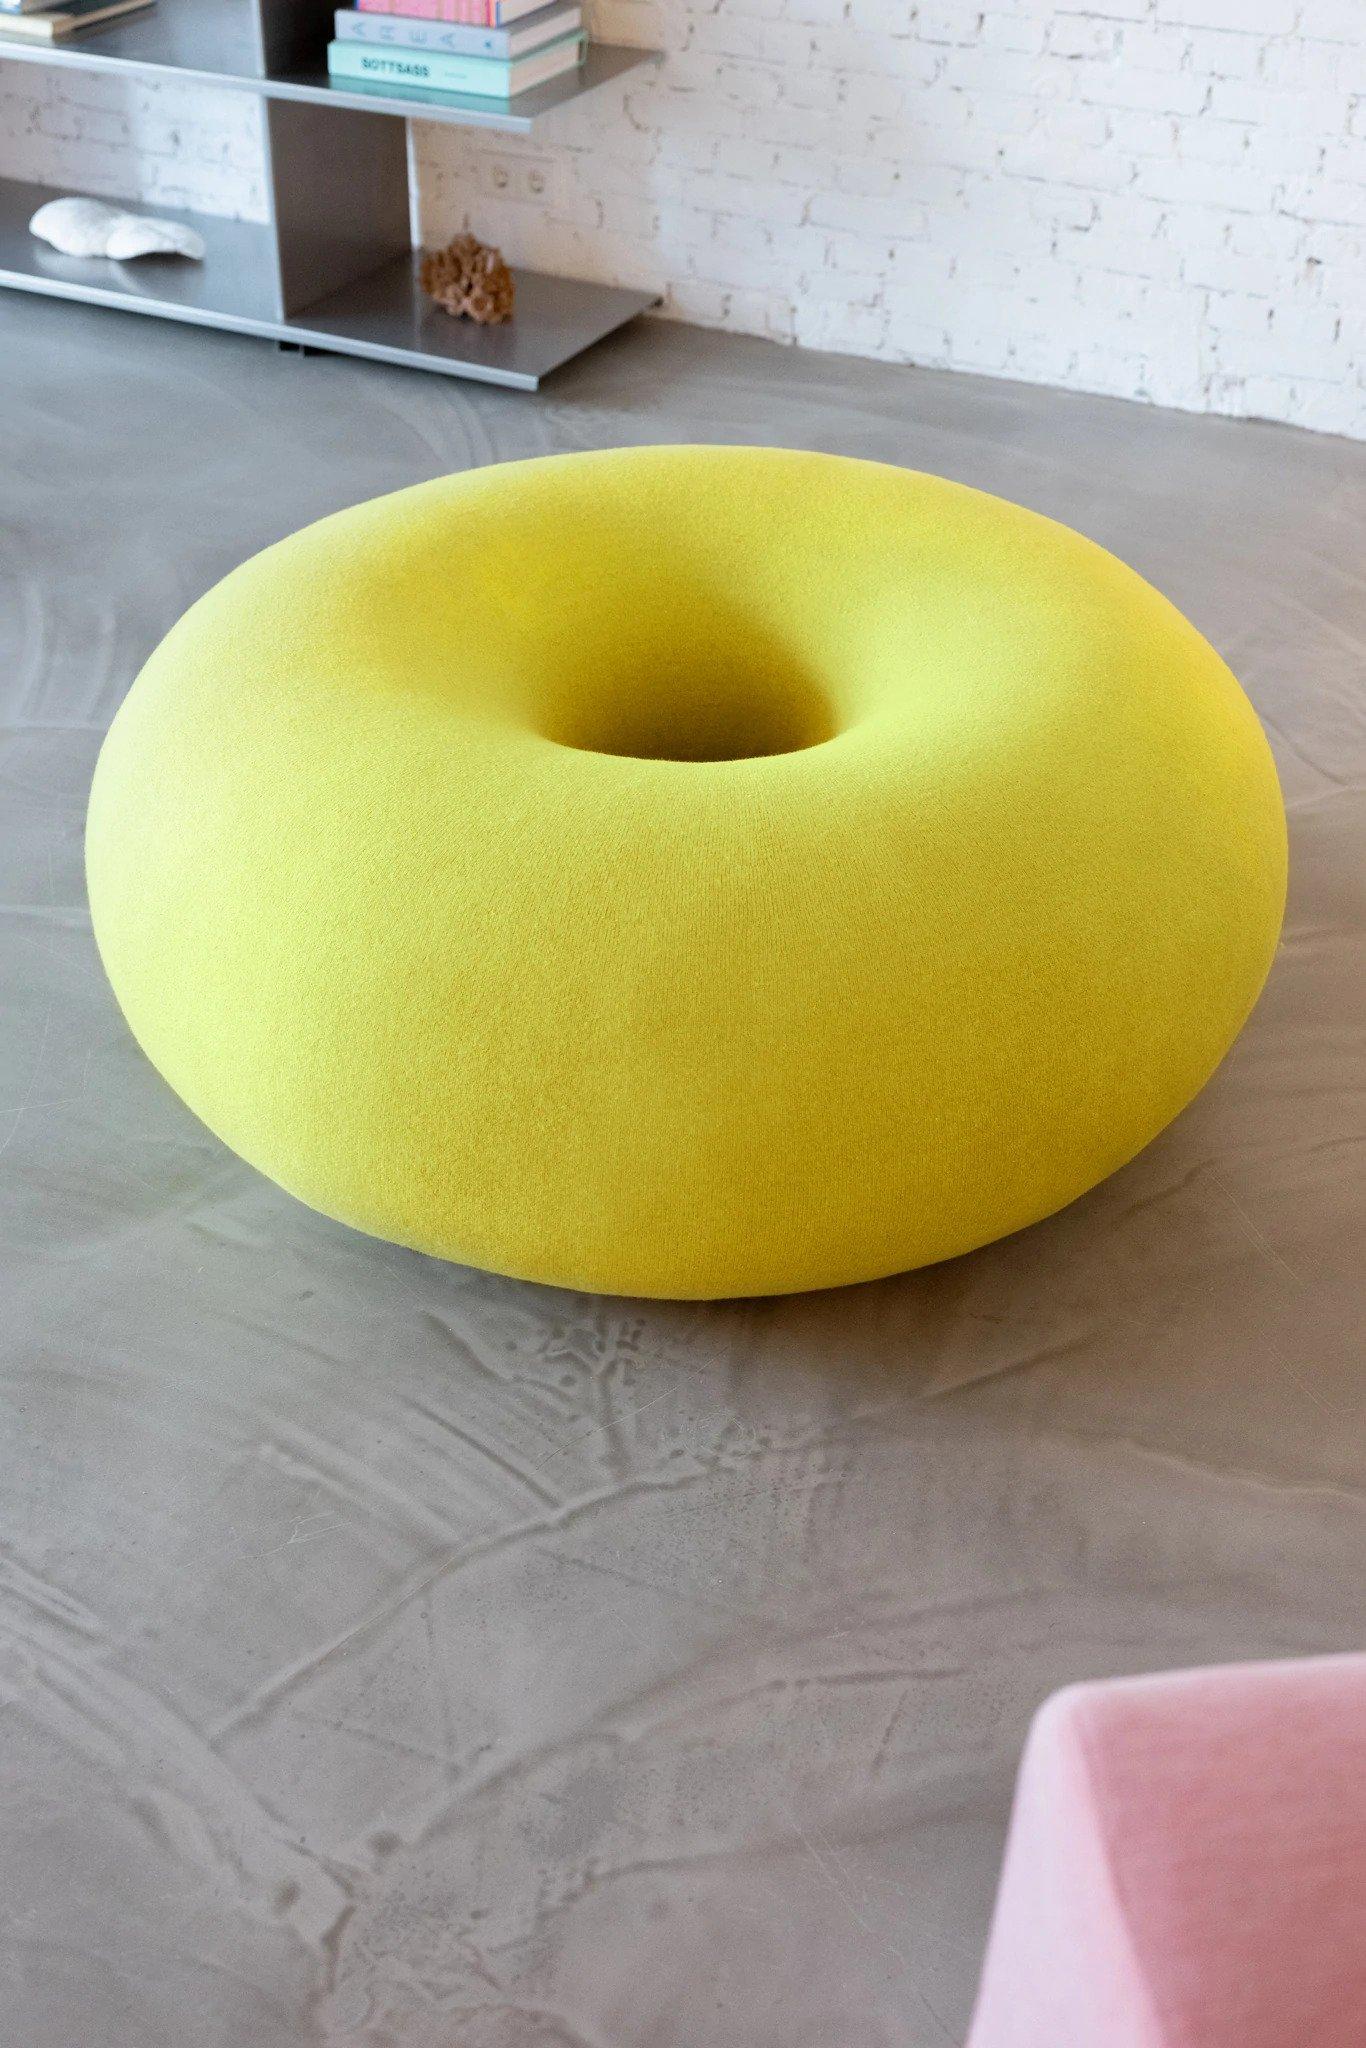 Le pouf Boa en forme de beignet de Sabine Marcelis est parfaitement sculptural, une forme graphique audacieuse qui interrompt les paysages intérieurs avec sa géométrie sans faille. Ce meuble d'appoint rembourré est arrondi et doux, enveloppé d'une